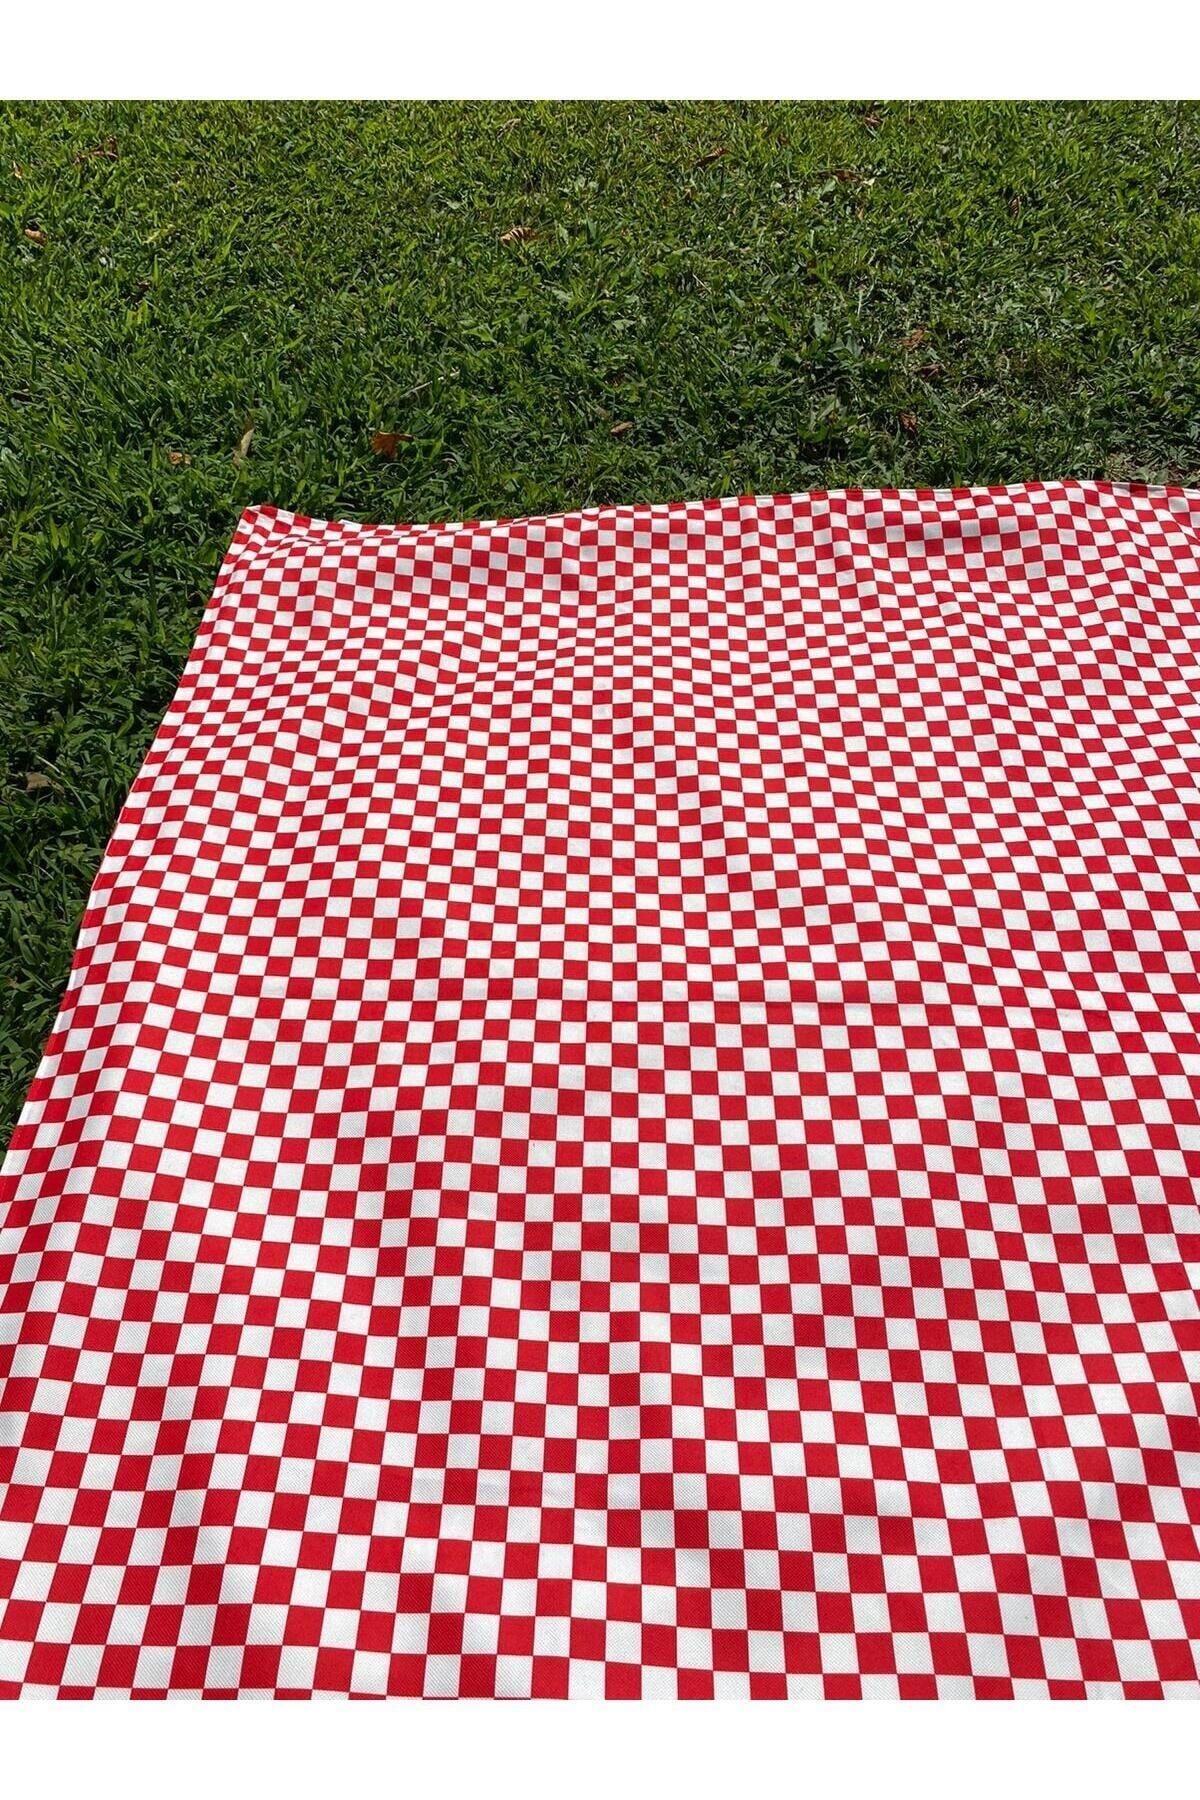 Morning Person Plaj Piknik Kamp Için Su Geçirmez Örtü 140x160cm Kırmızı Beyaz